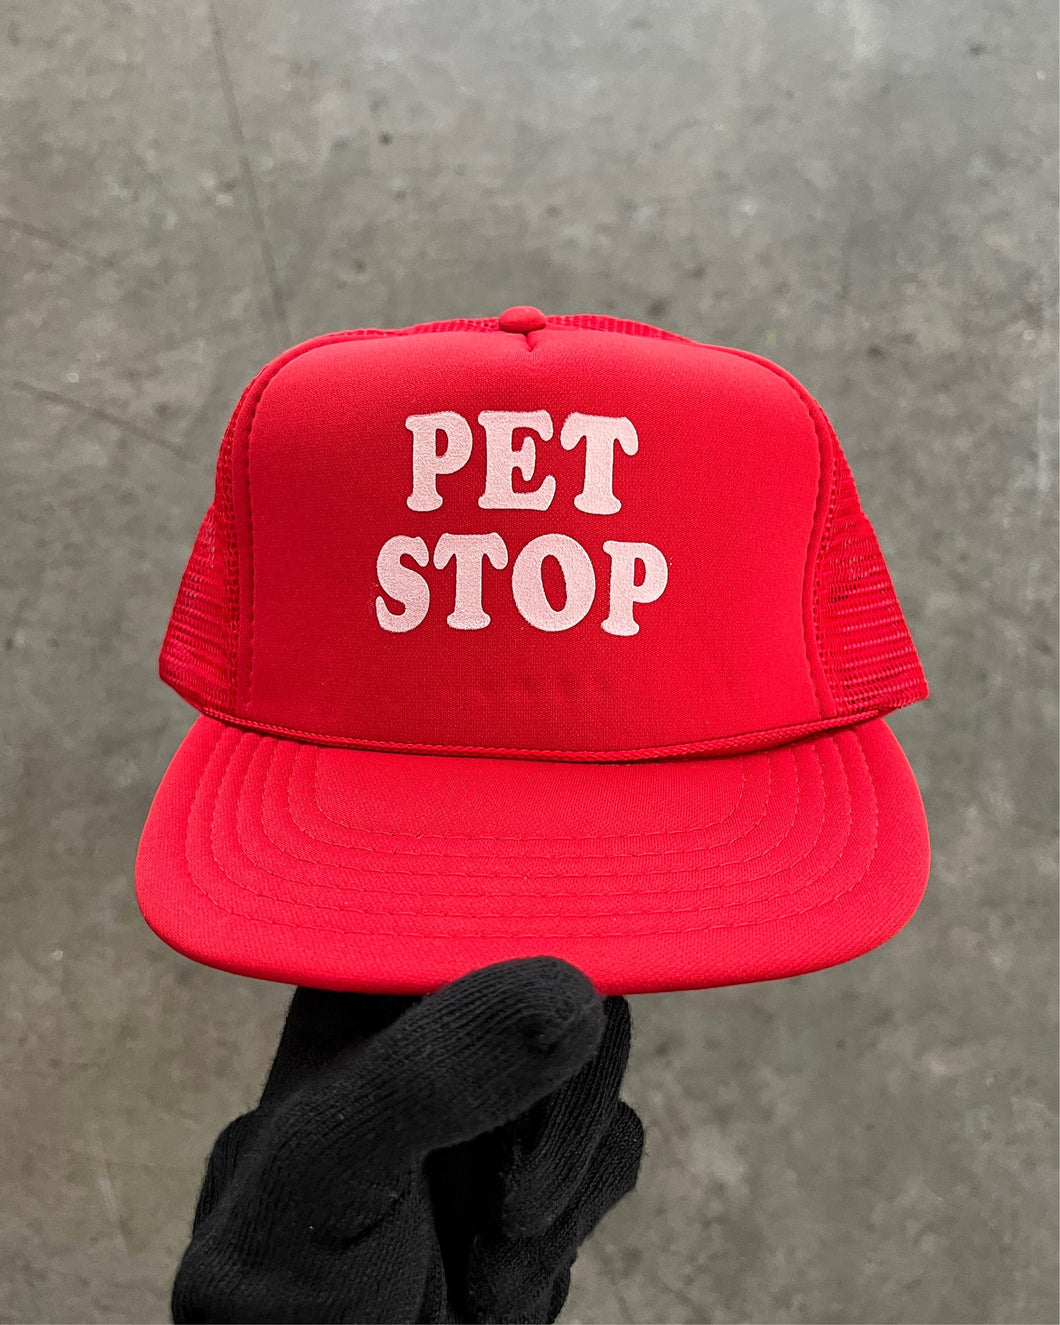 “PET STOP” RED FOAM TRUCKER HAT - 1990S